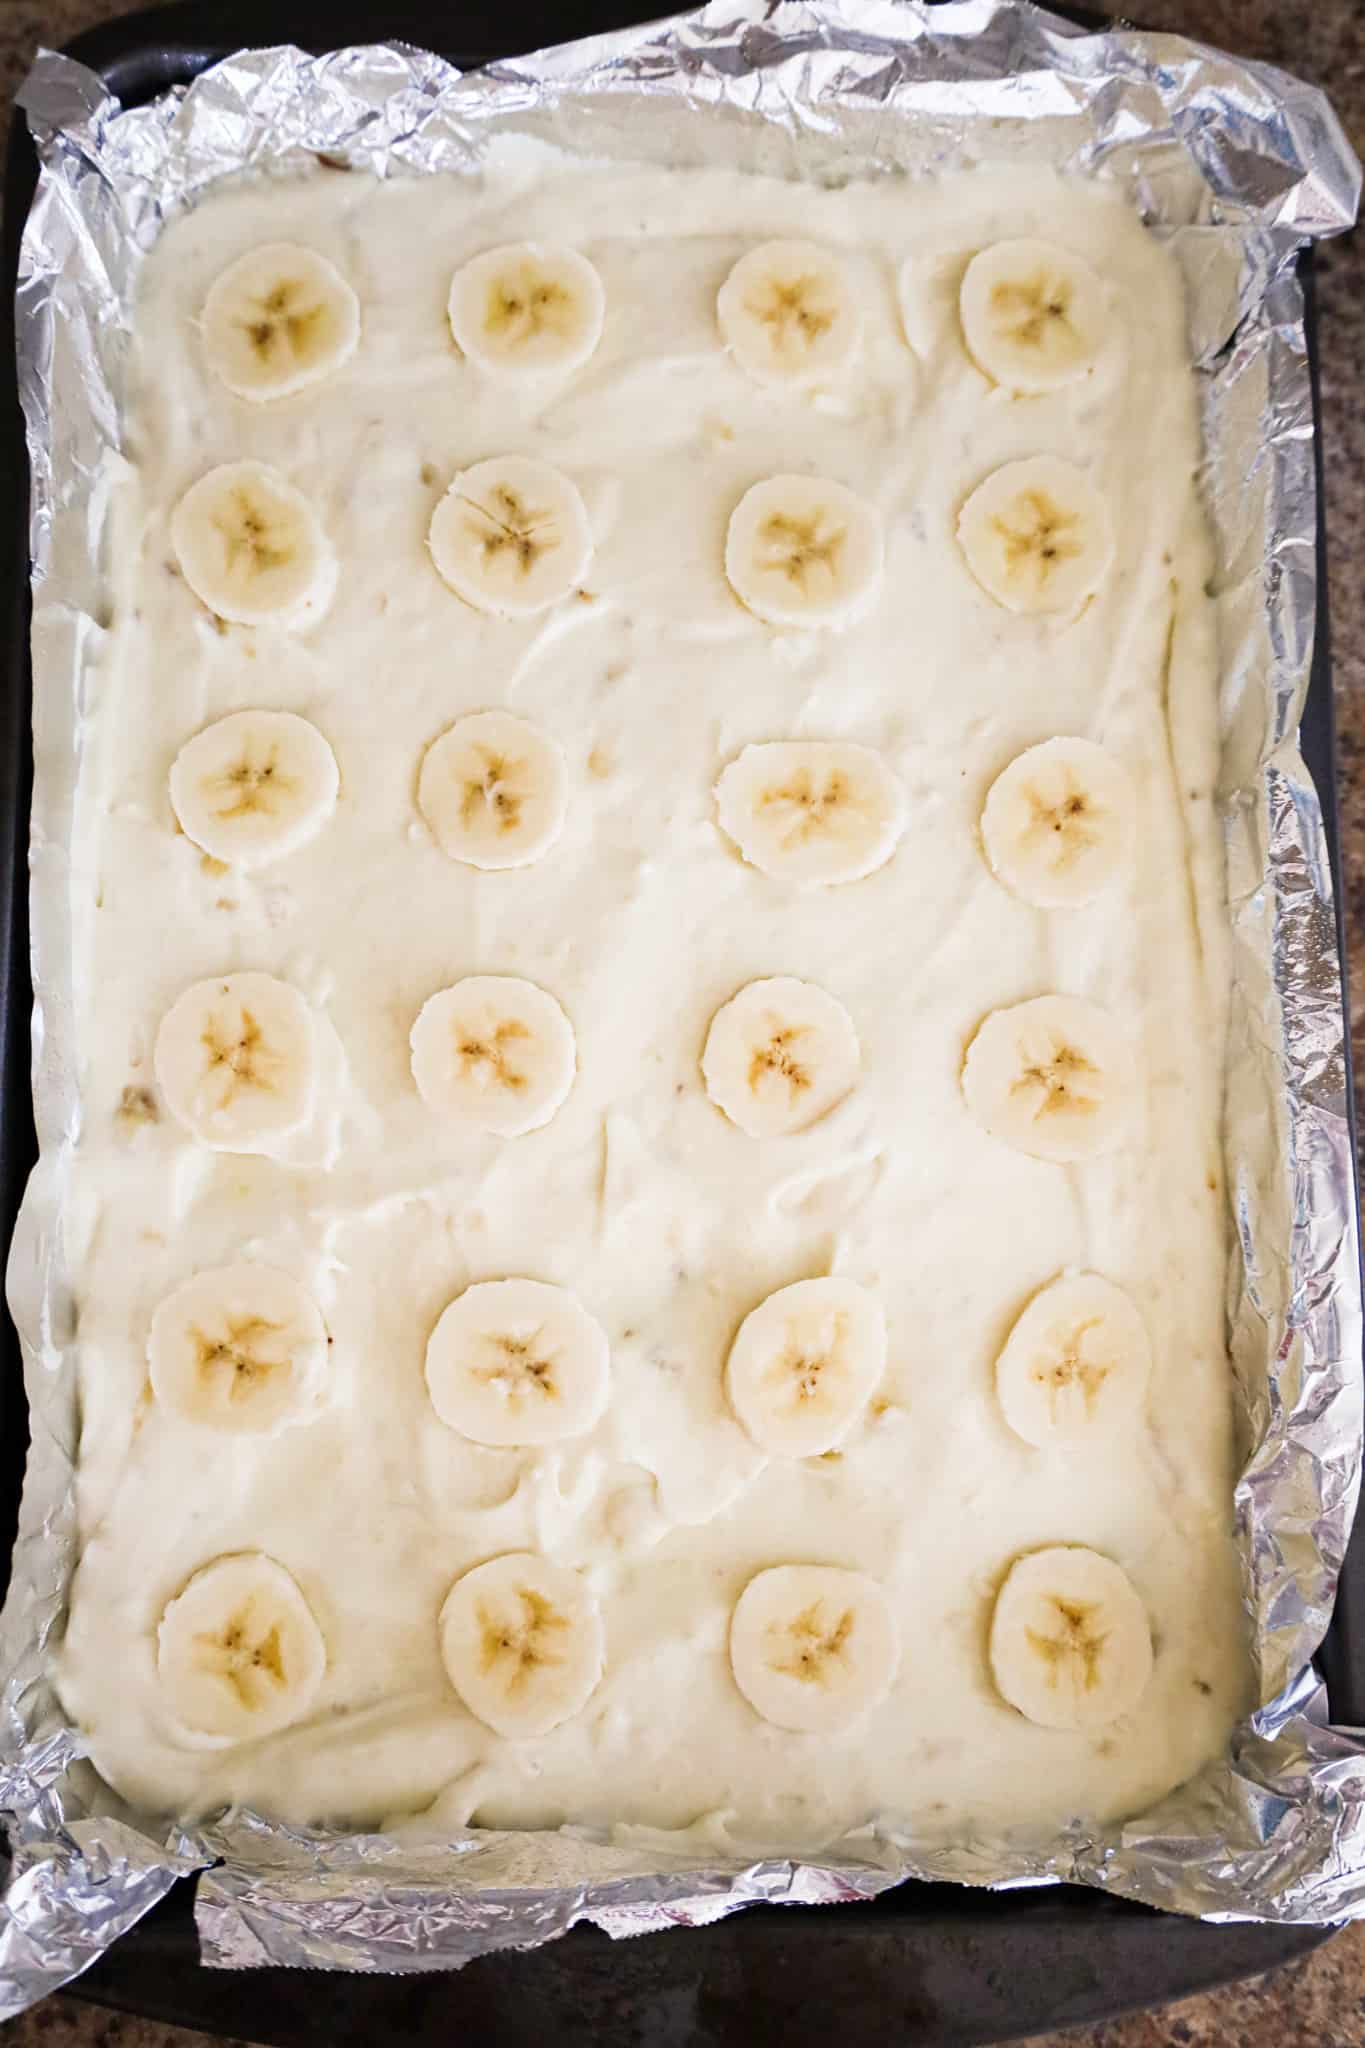 banana slices on top of banana pudding brownies